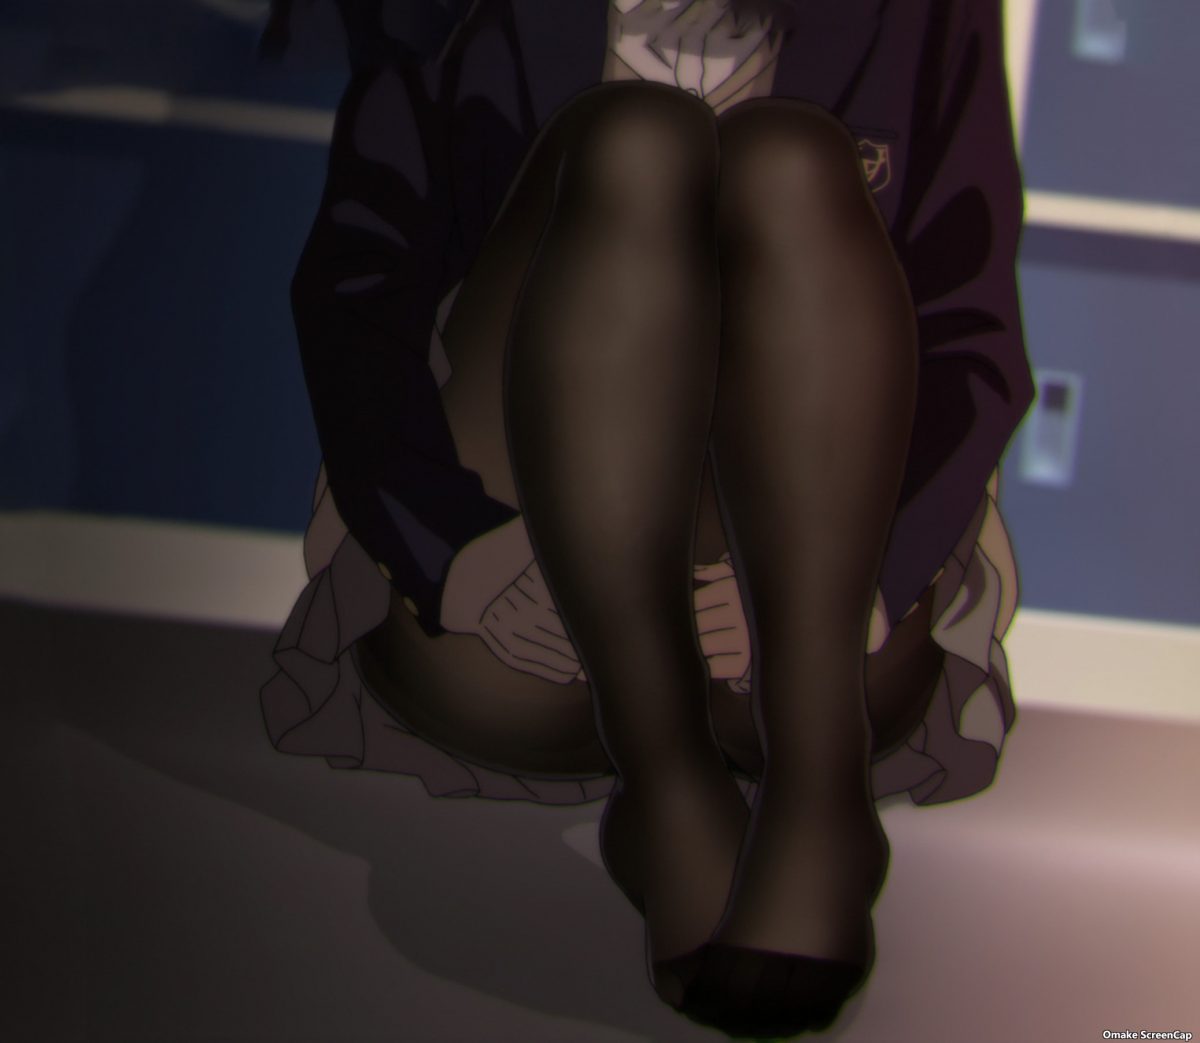 Miru Tights Episode 13 [BD OVA] Yua Sits On Floor